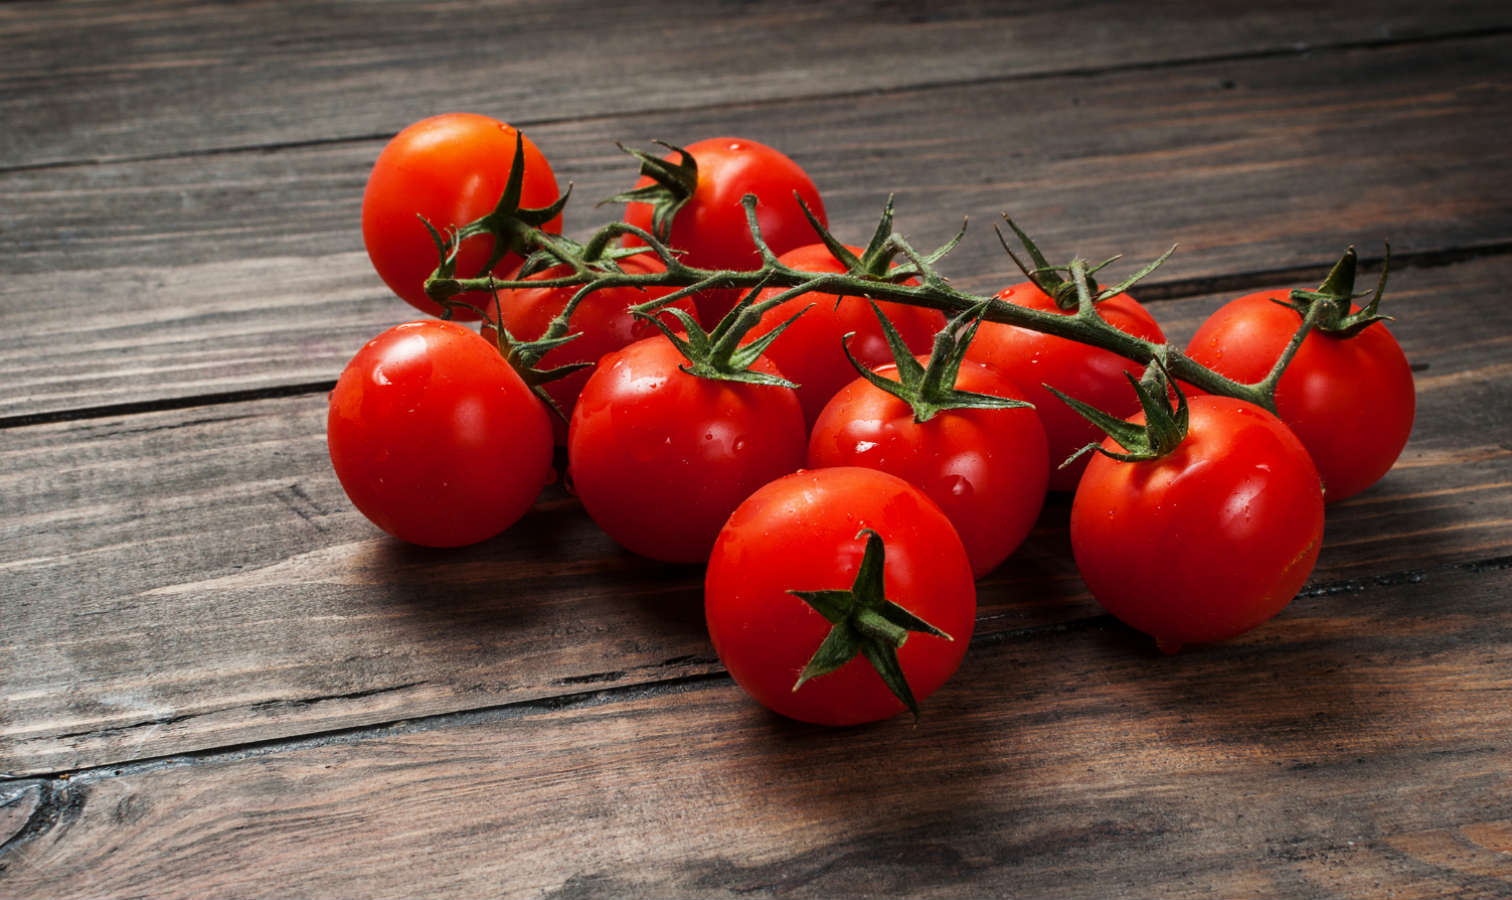 tomates-cherry-confitados-prepararlos-anadirlos-tus-platos